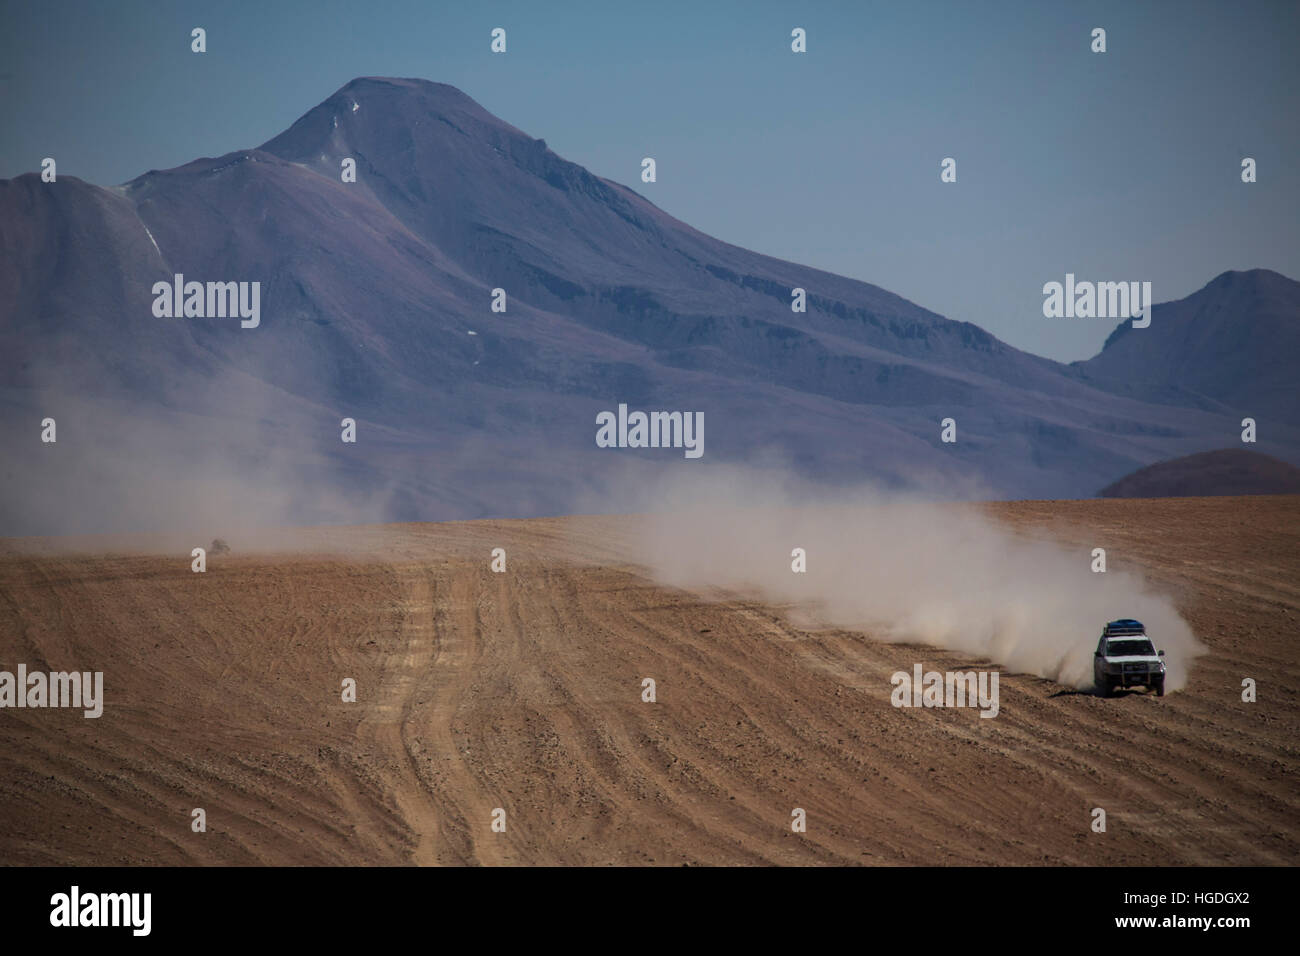 Drive in in the Siloli desert, Stock Photo